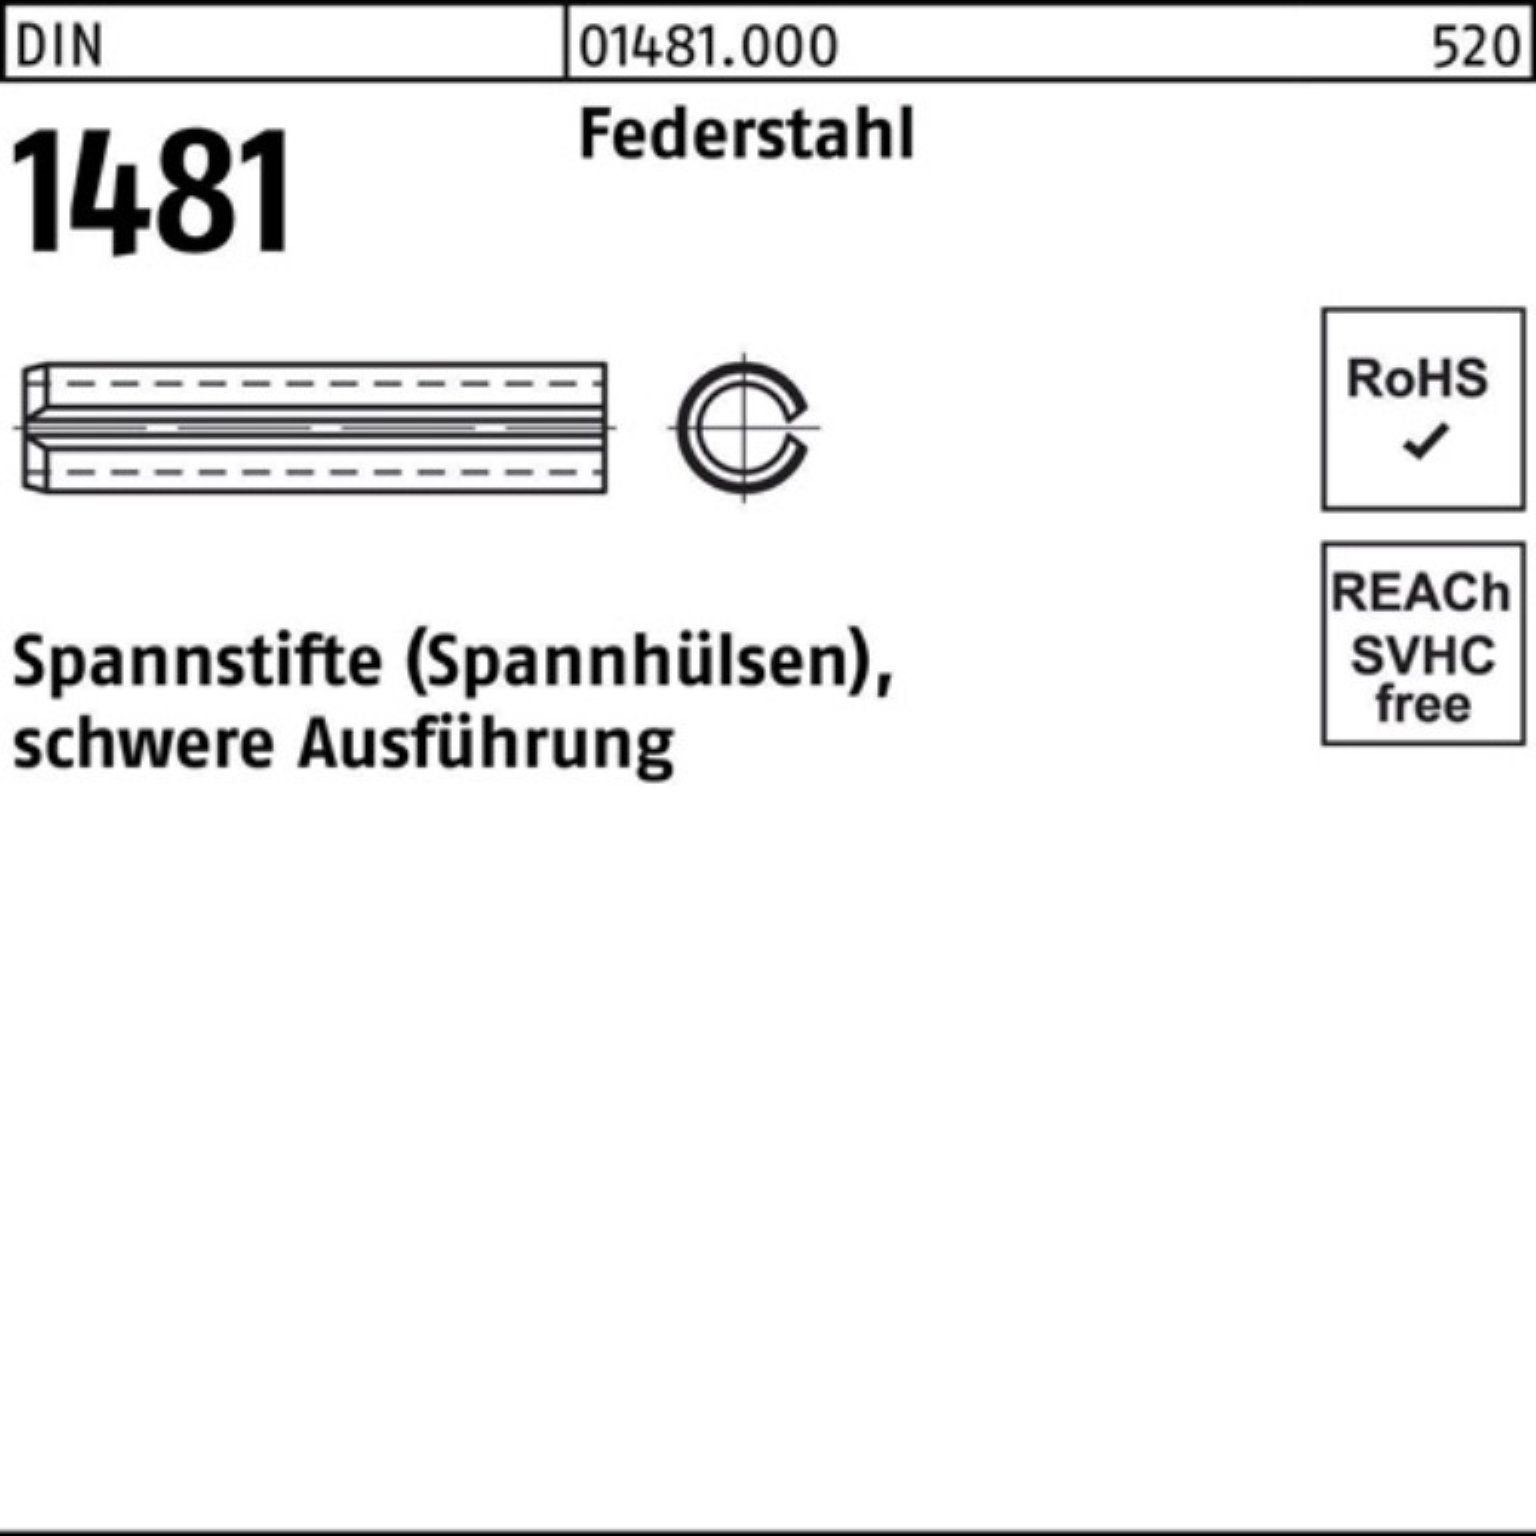 Reyher Spannstift 100er Pack Spannstift DIN 1481 10x 110 Federstahl schwere Ausführung